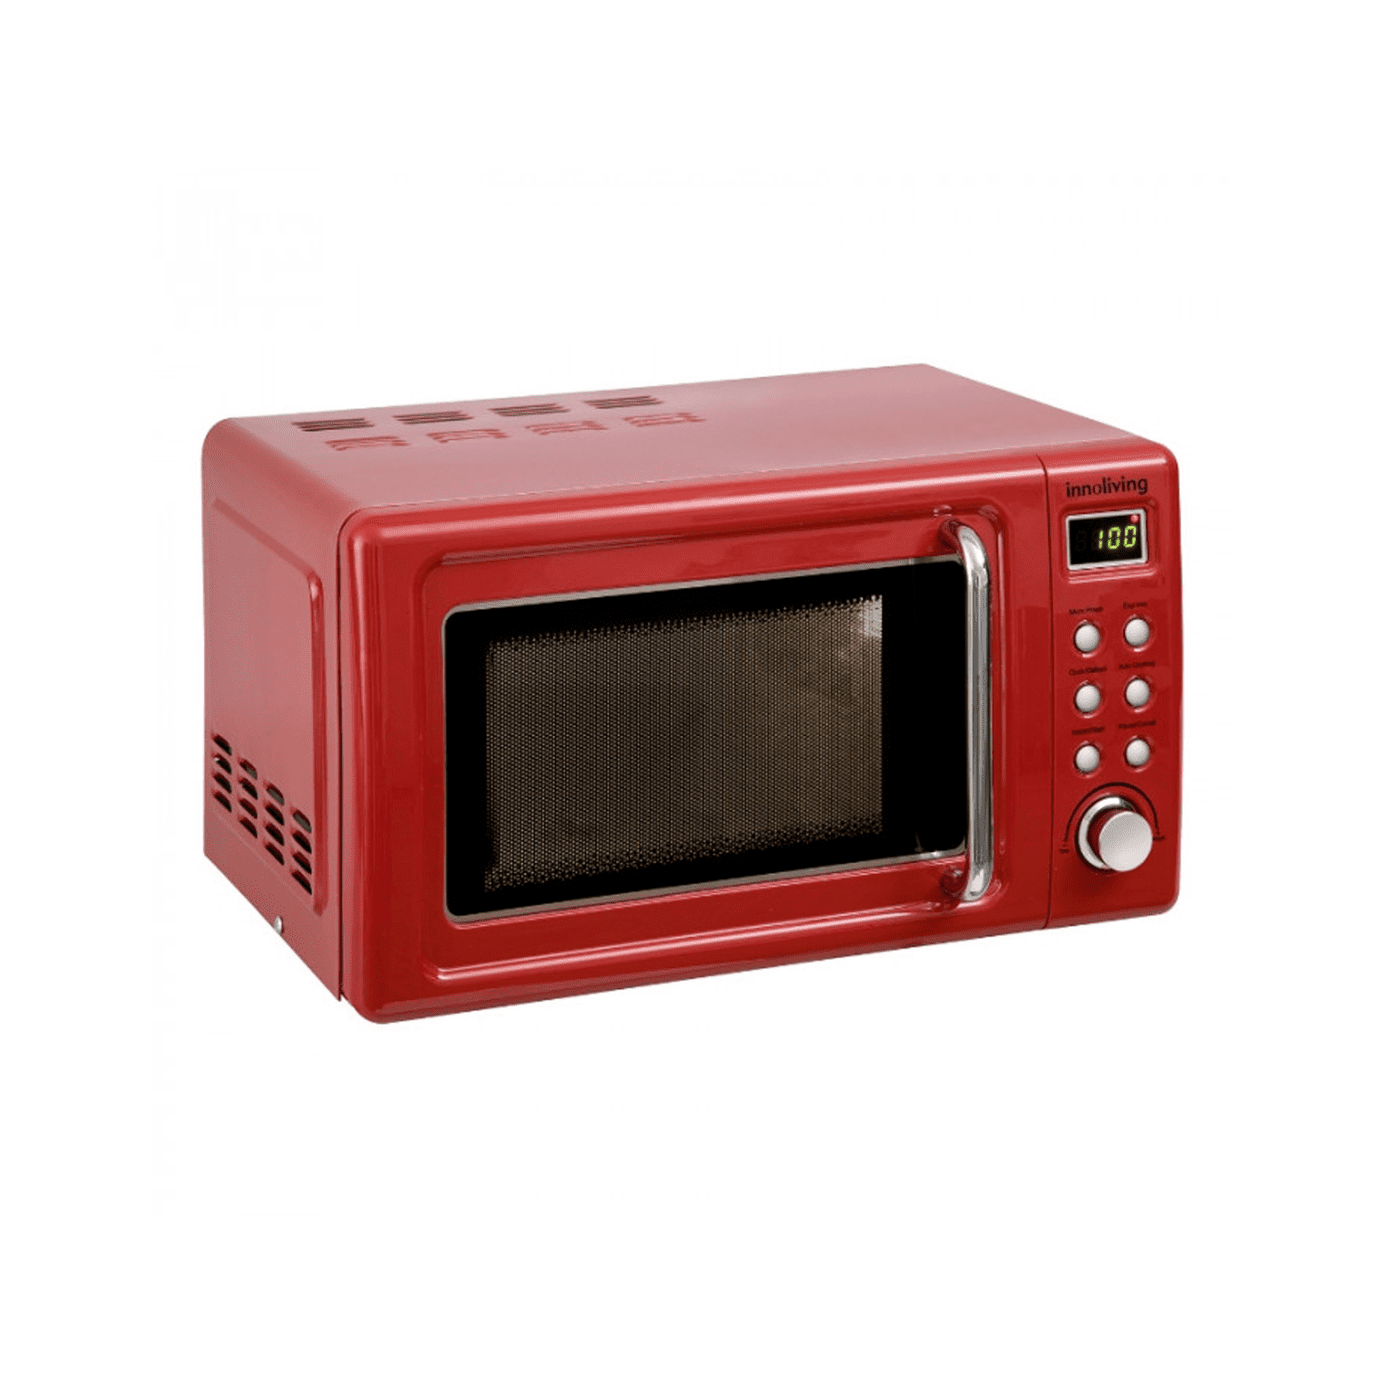 Forno microonde Vintage 20 litri funzione scongelamento e grill, Innol –  Inshopping